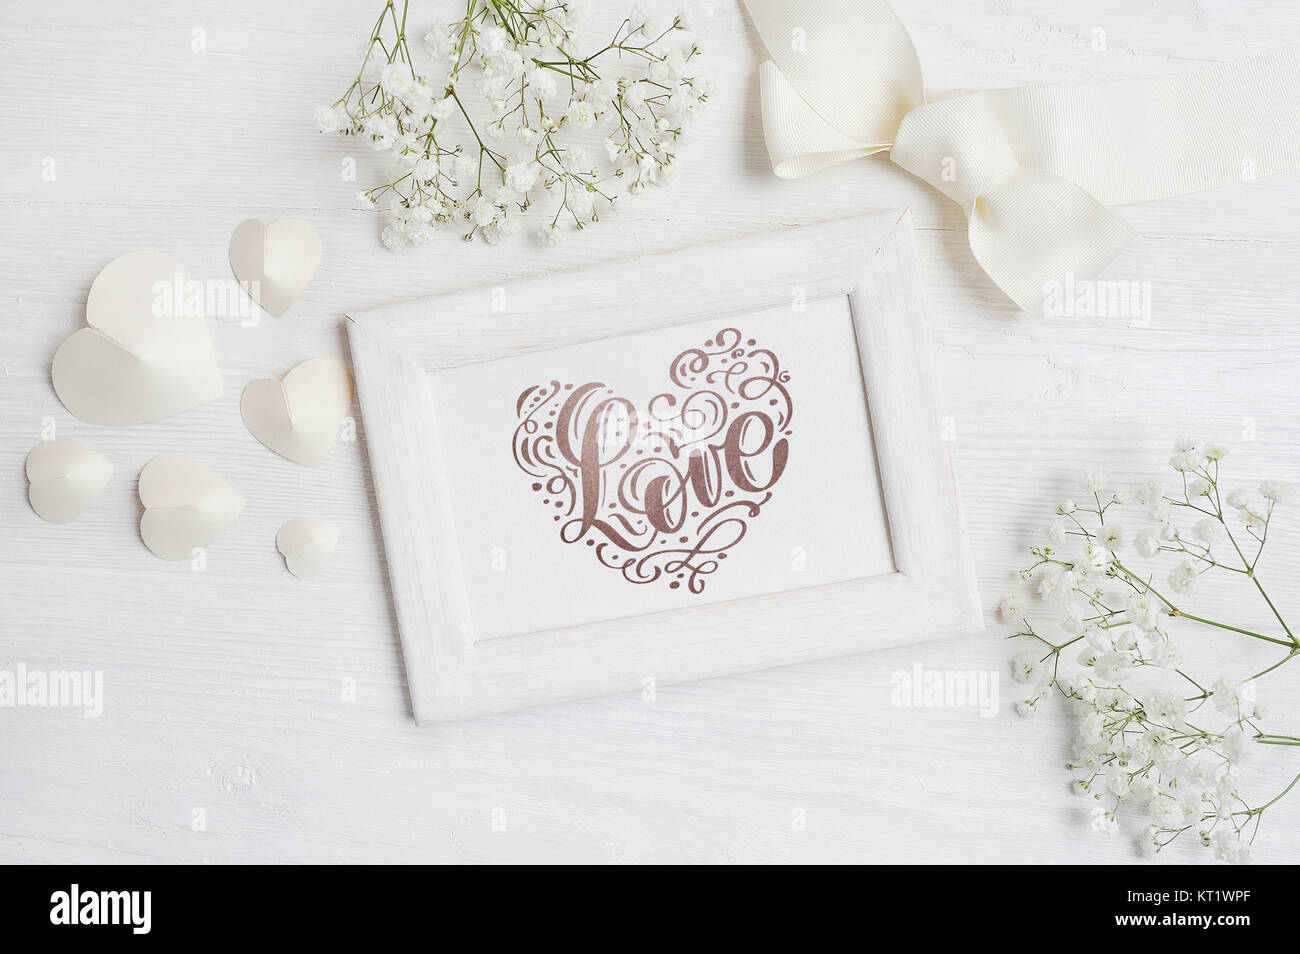 Il telaio in legno con la scritta amore card per il giorno di San Valentino in stile rustico con posto per il vostro testo, Piana, laici top view photo. Foto Stock